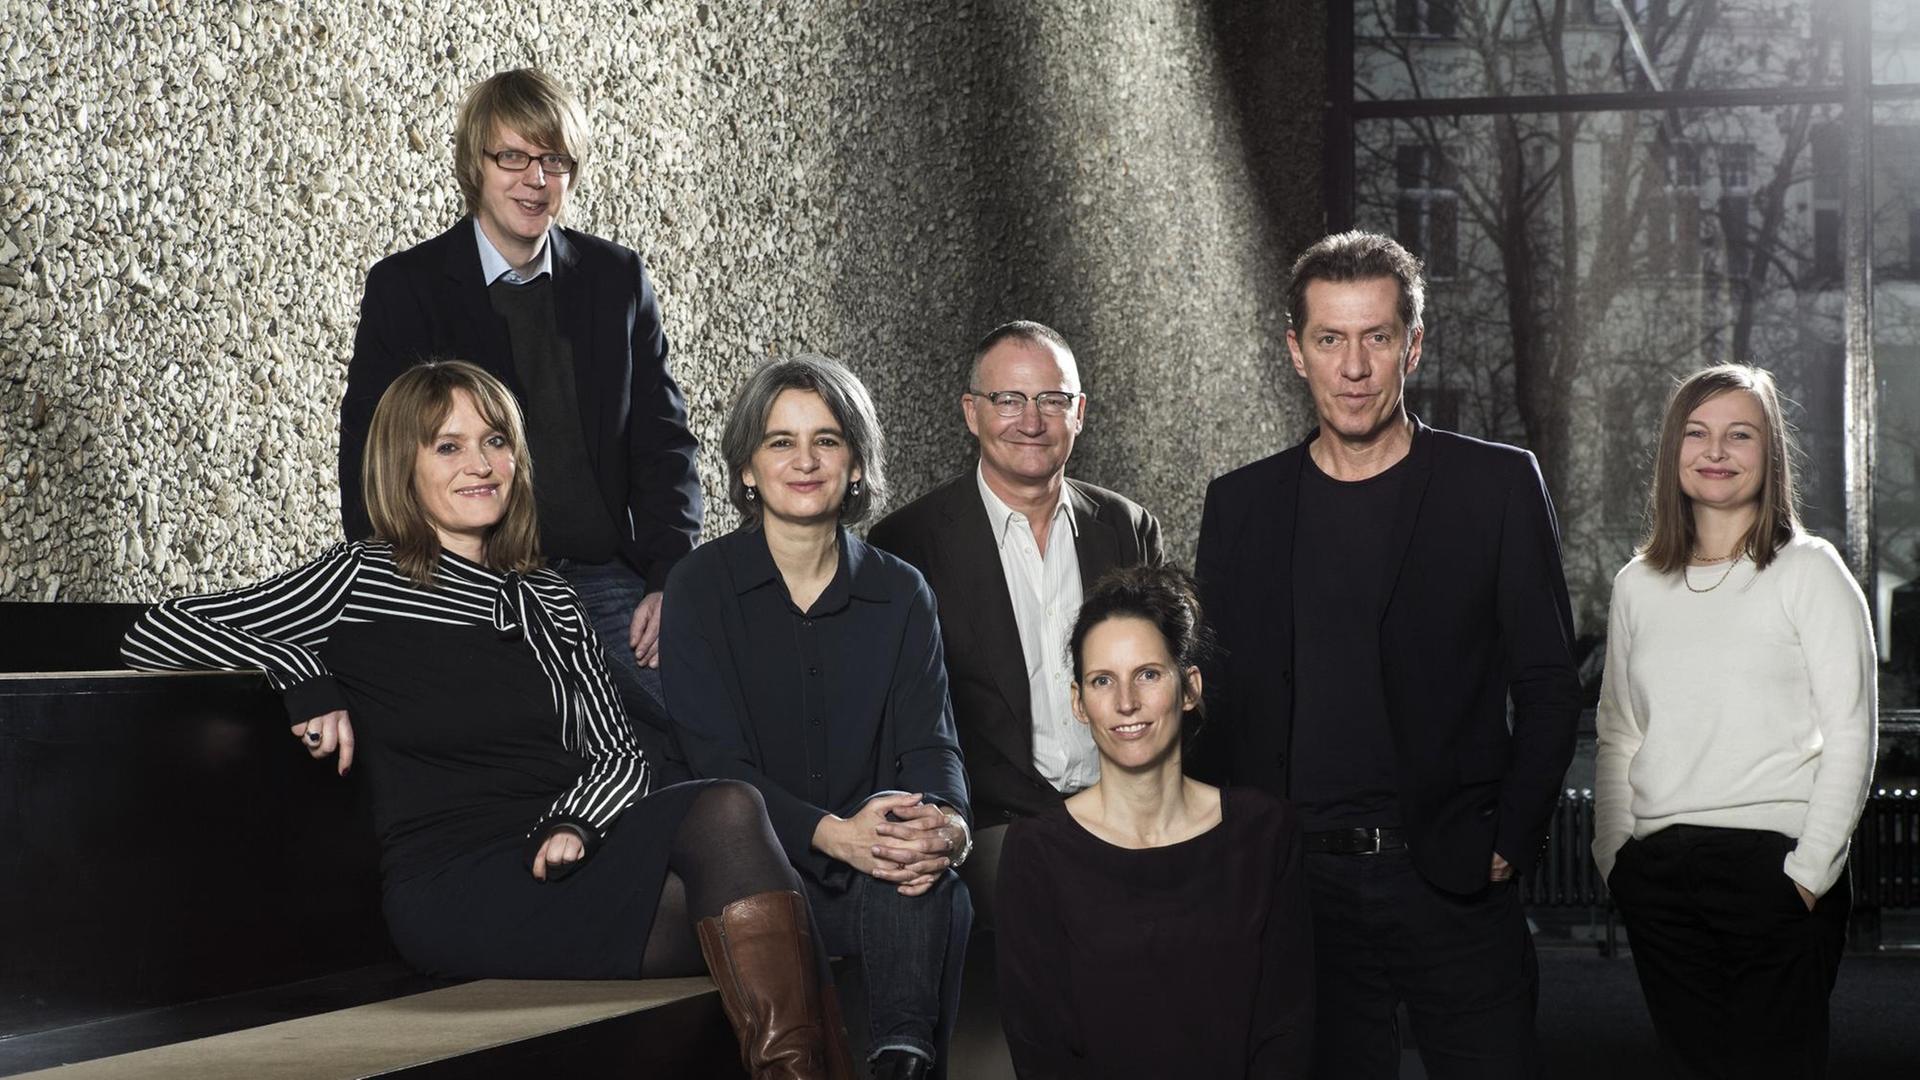 Das Foto zeigt die Jury des Berliner Theatertreffens 2019, also Dorothea Marcus, Christian Rakow, Shirin Sojitrawalla, Andreas Klaeui, Eva Behrendt, Wolfgang Höbel, Margarete Affenzeller